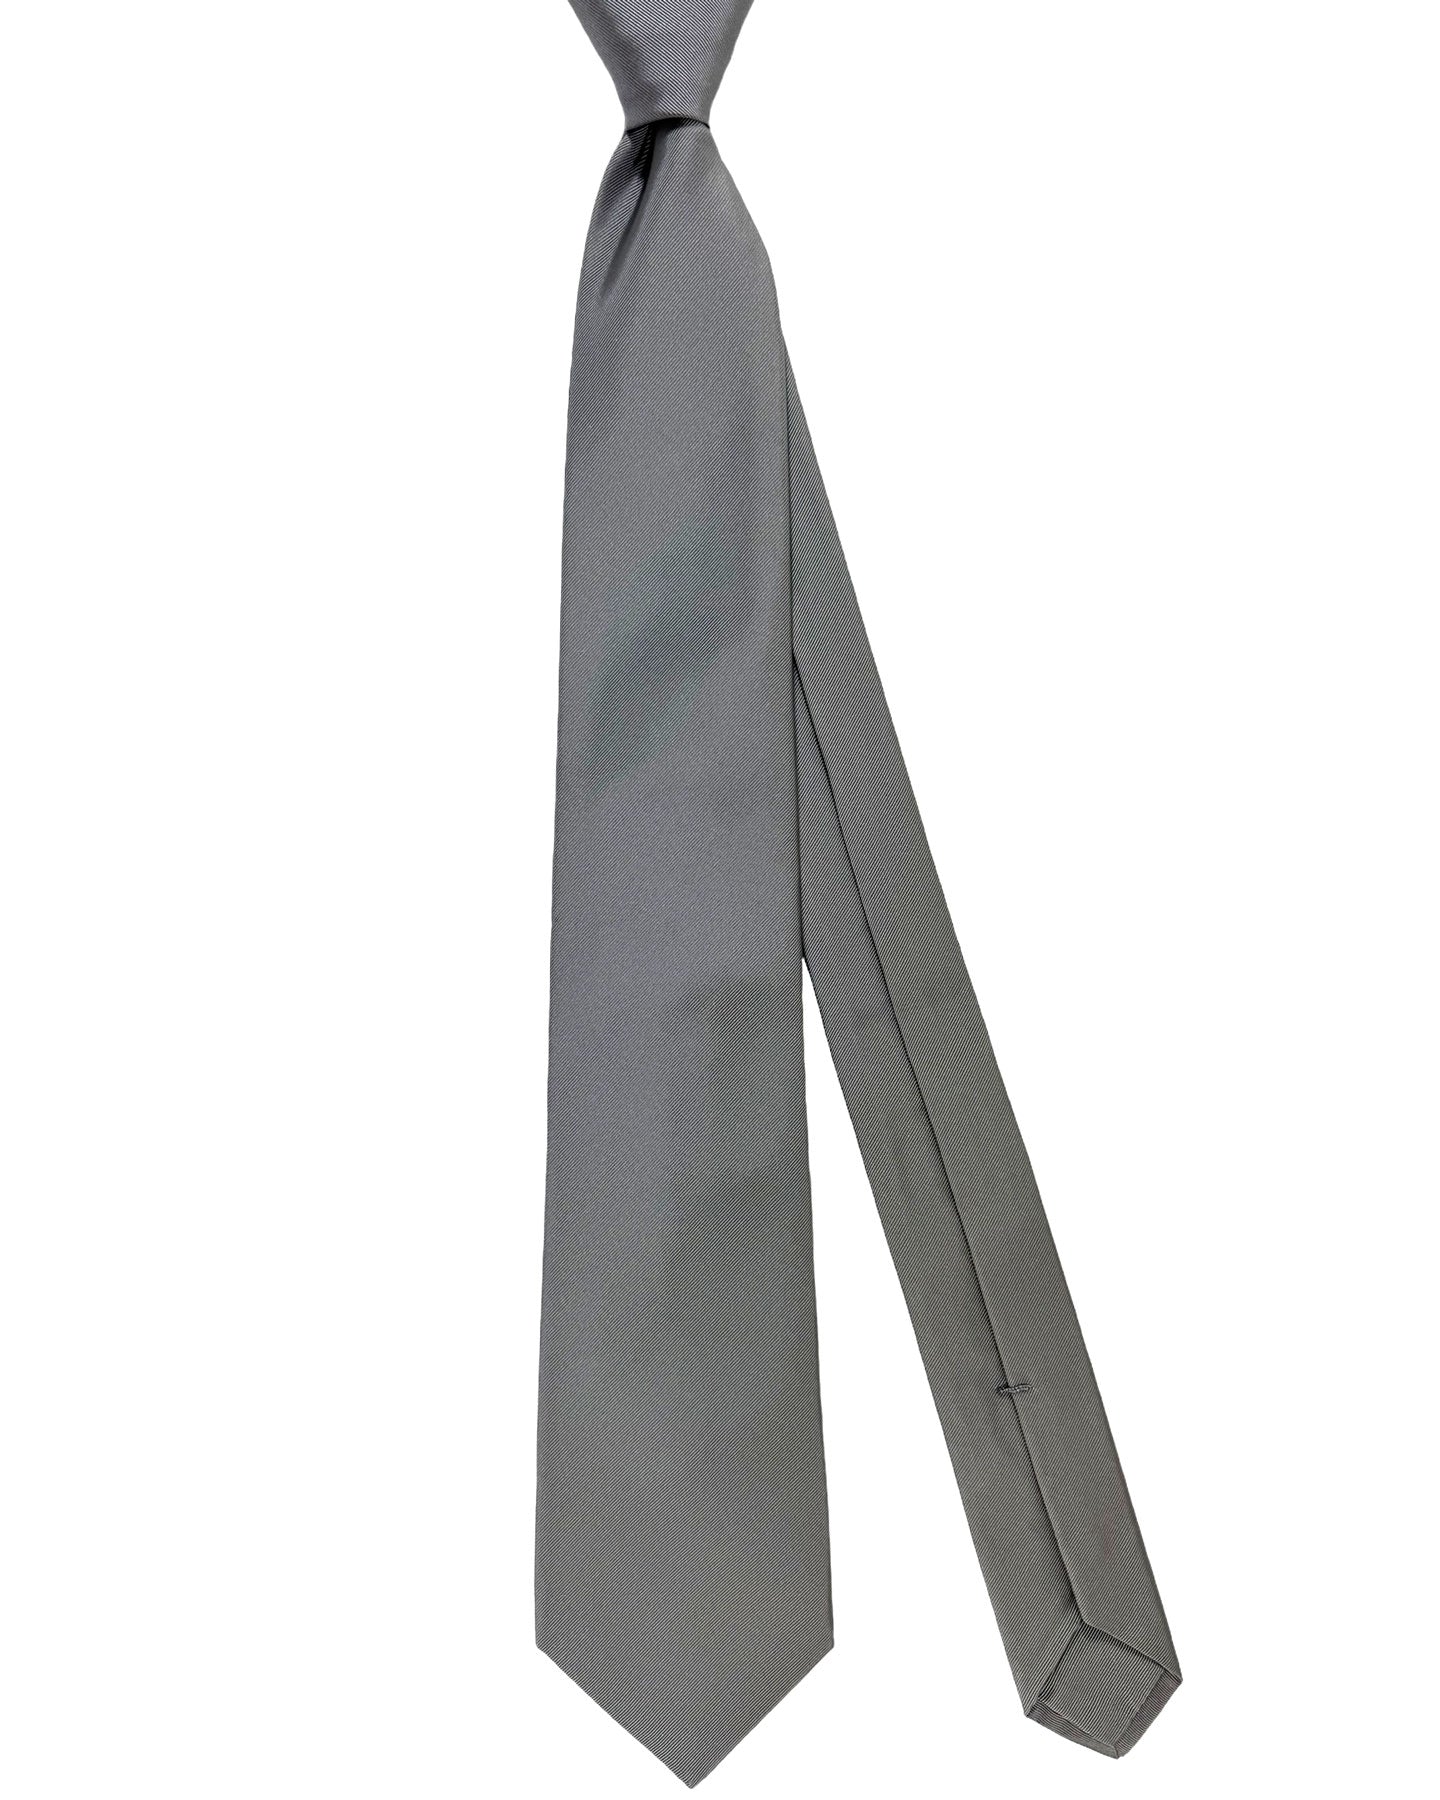 Kiton Silk Tie Gray Grosgrain - Sevenfold Necktie